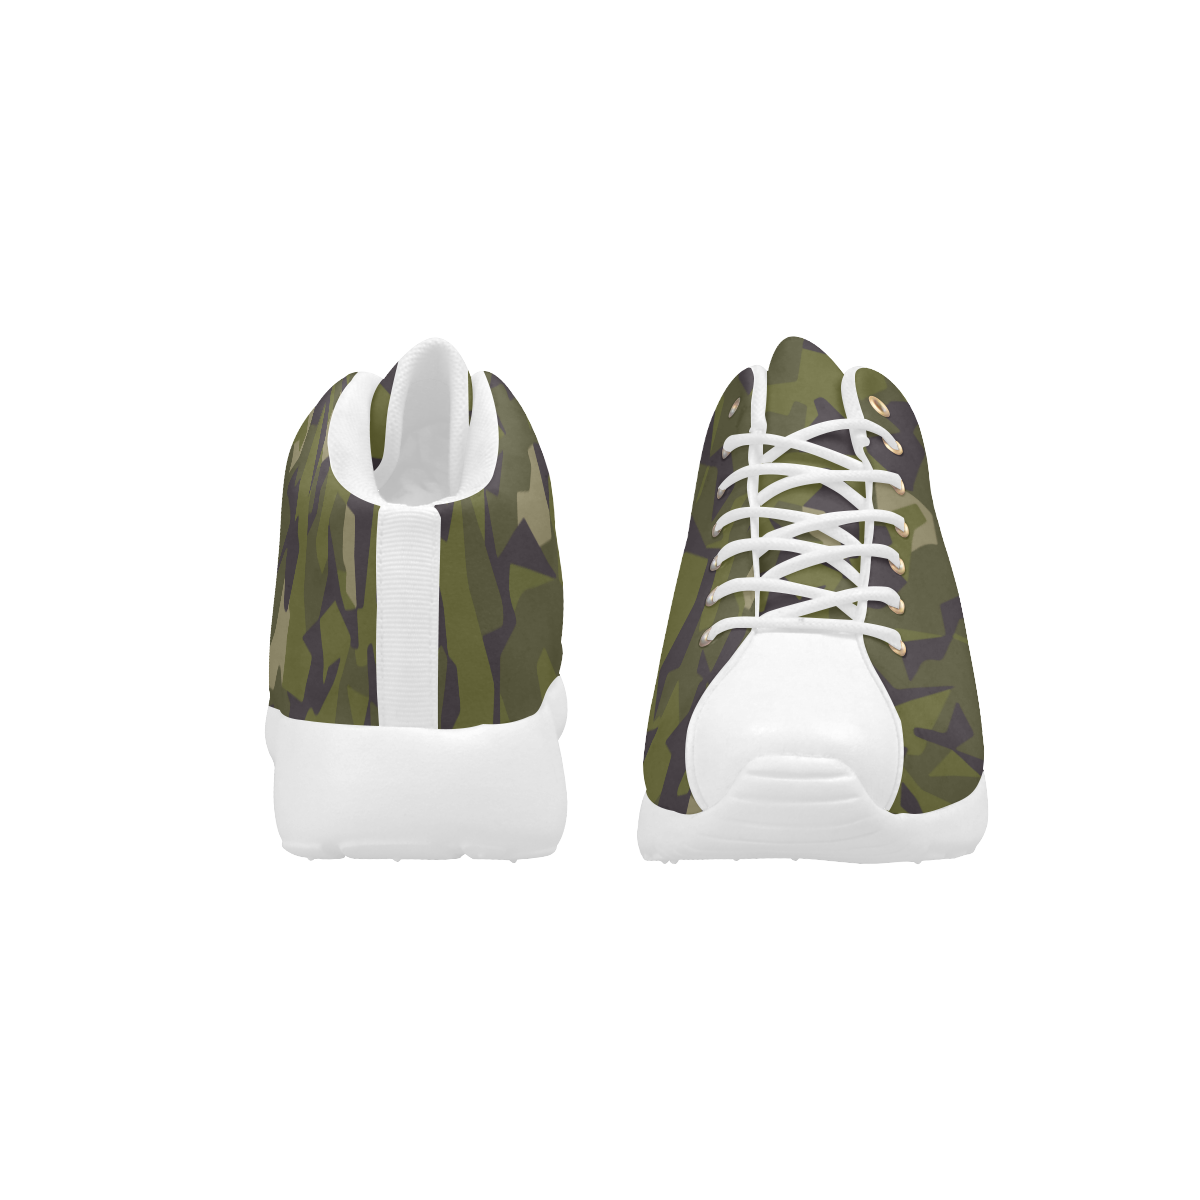 Swedish M90 woodland camouflage Men's Basketball Training Shoes (Model 47502)